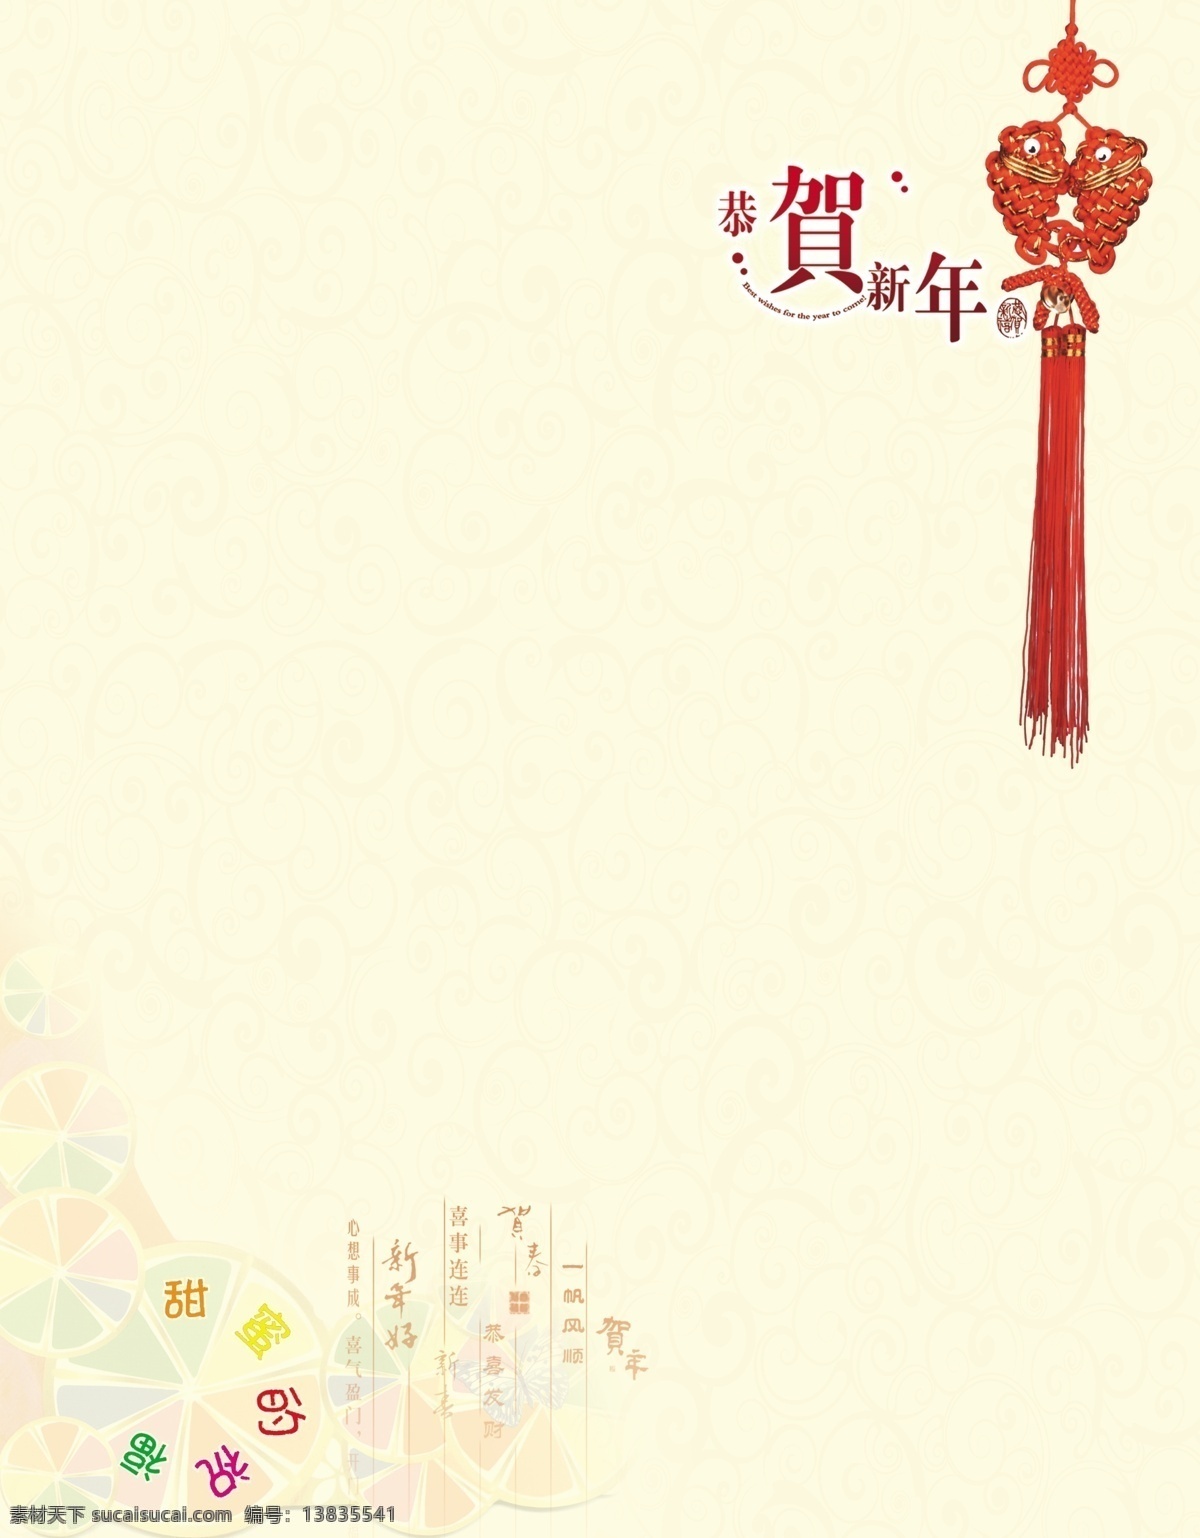 学校贺卡内页 学校贺卡 异形花朵 鱼型中国结 恭贺新年 名片卡片 广告设计模板 源文件